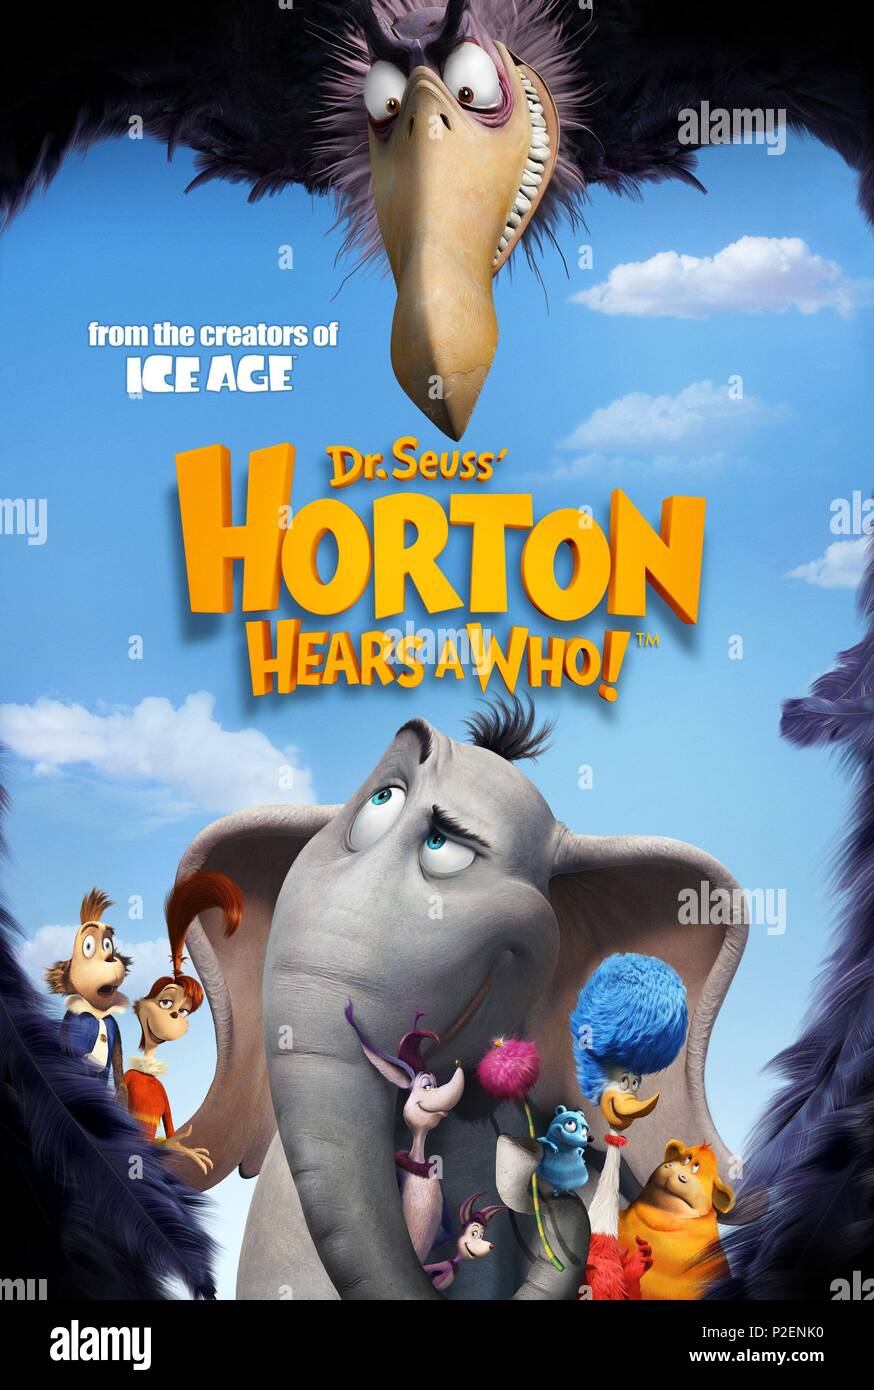 Horton nghe thấy gì! Đó là tiêu đề của bộ phim gốc đầy cảm xúc và hài hước này. Hãy theo chân Horton, con voi của chúng ta, và khám phá những tình huống dở khóc dở cười của anh ta khi cố gắng giúp đỡ một thế giới nhỏ bé. Đây sẽ là một trải nghiệm thú vị và rất đáng xem.